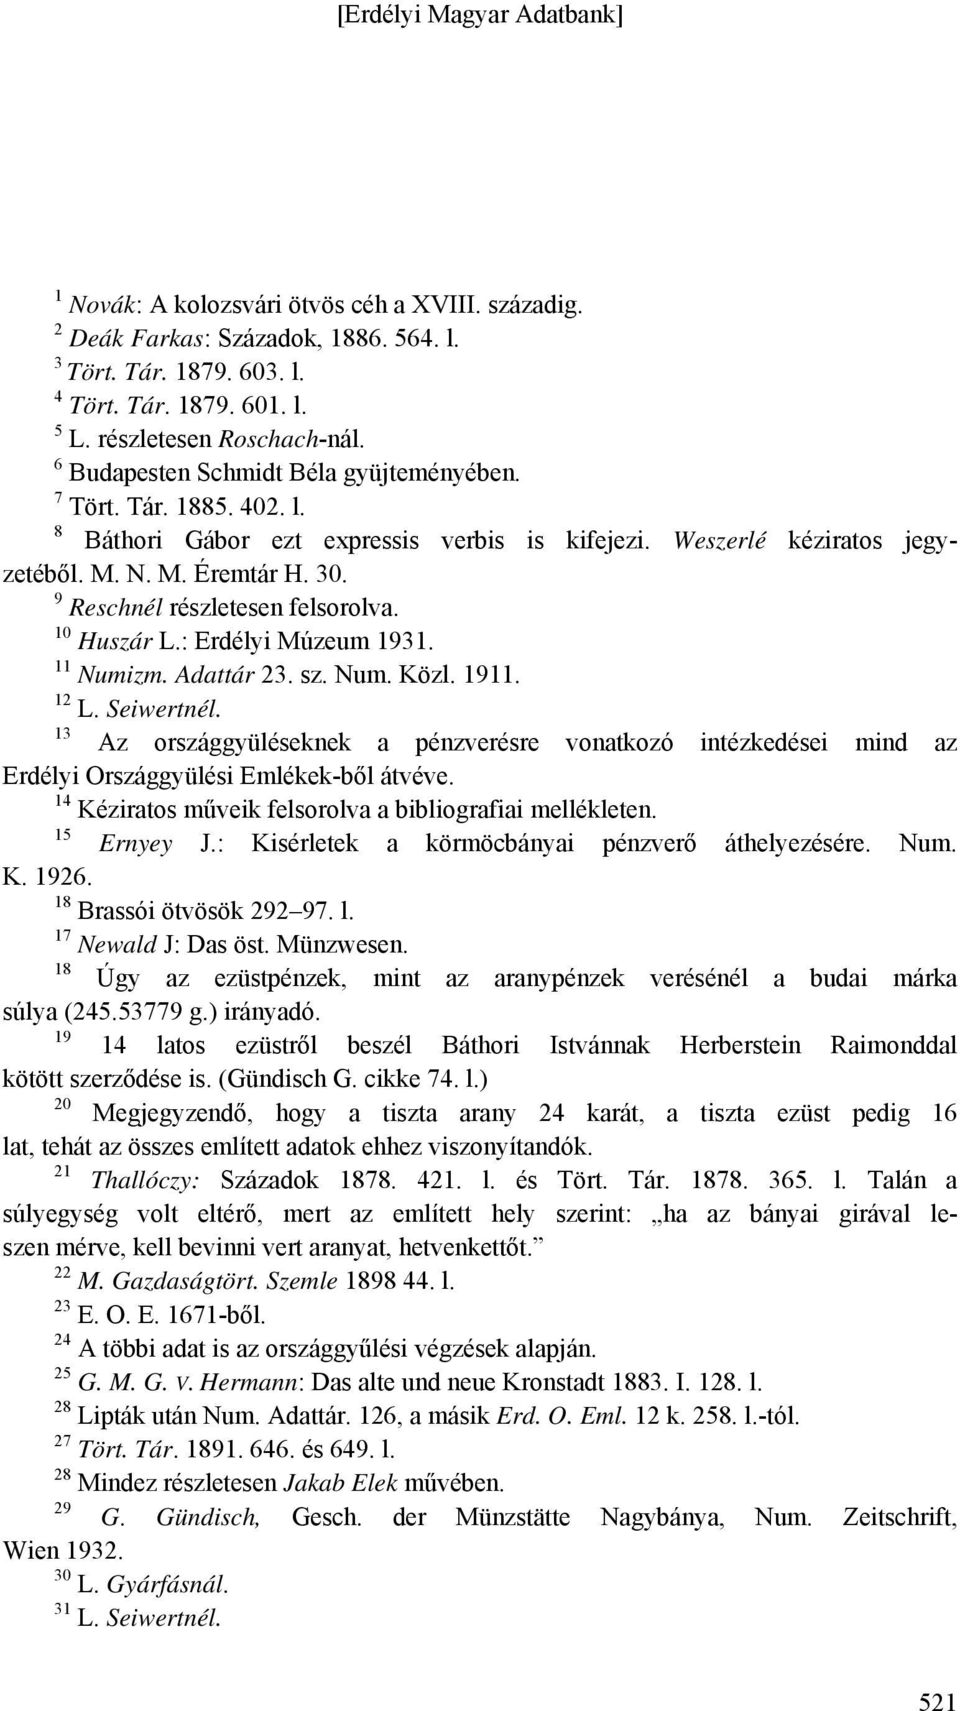 9 Reschnél részletesen felsorolva. 10 Huszár L.: Erdélyi Múzeum 1931. 11 Numizm. Adattár 23. sz. Num. Közl. 1911. 12 L. Seiwertnél.